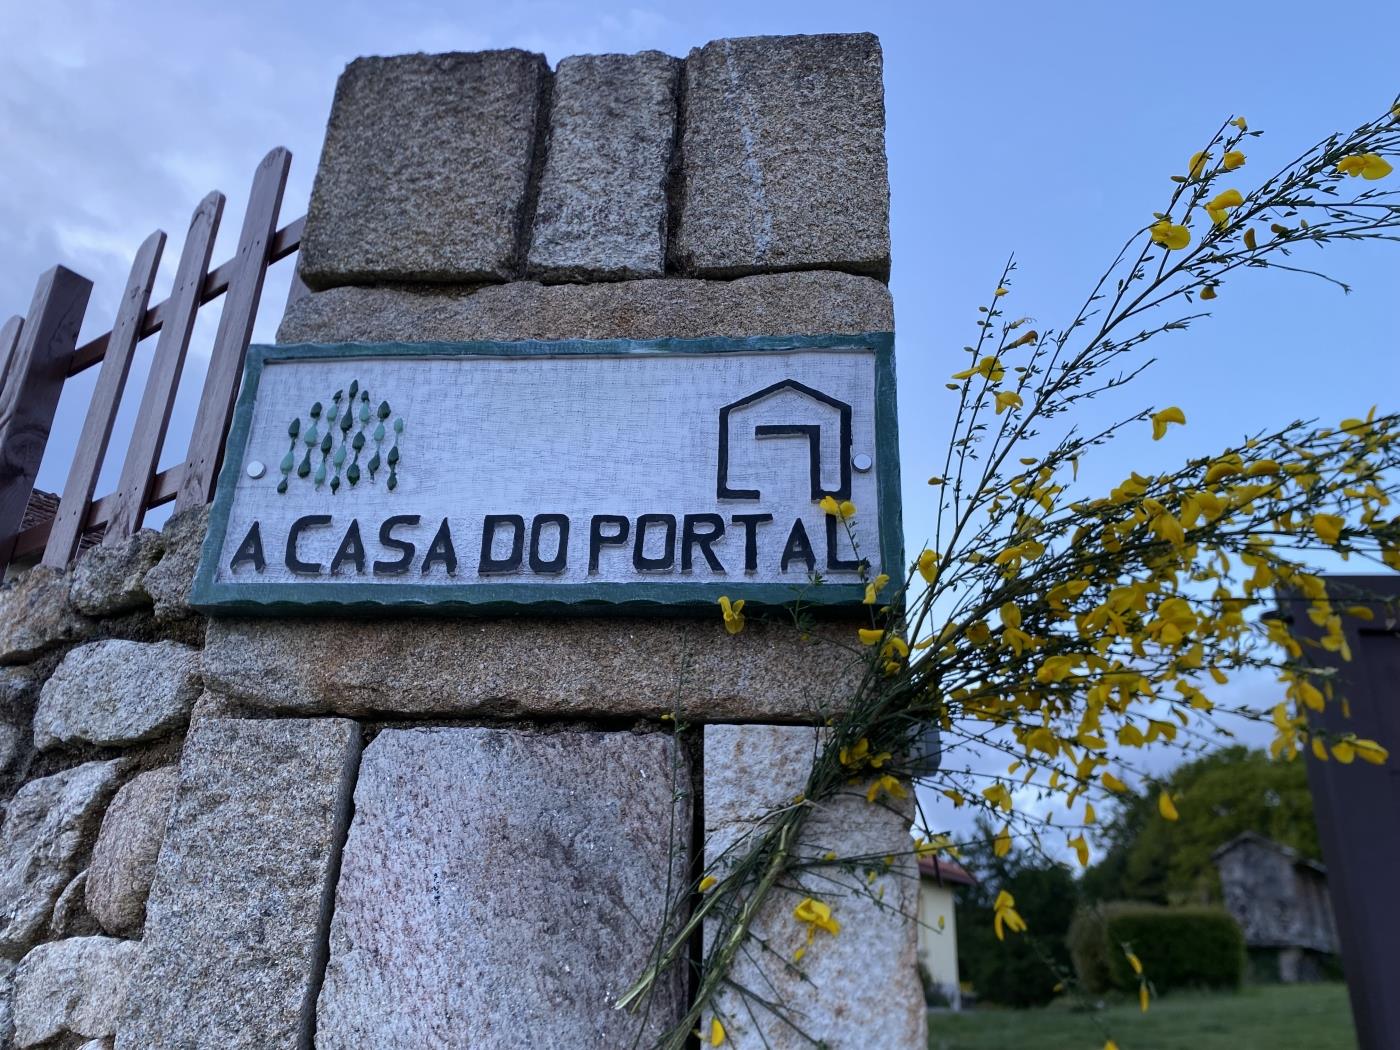 A Casa do Portal Castriño in Campo Lameiro